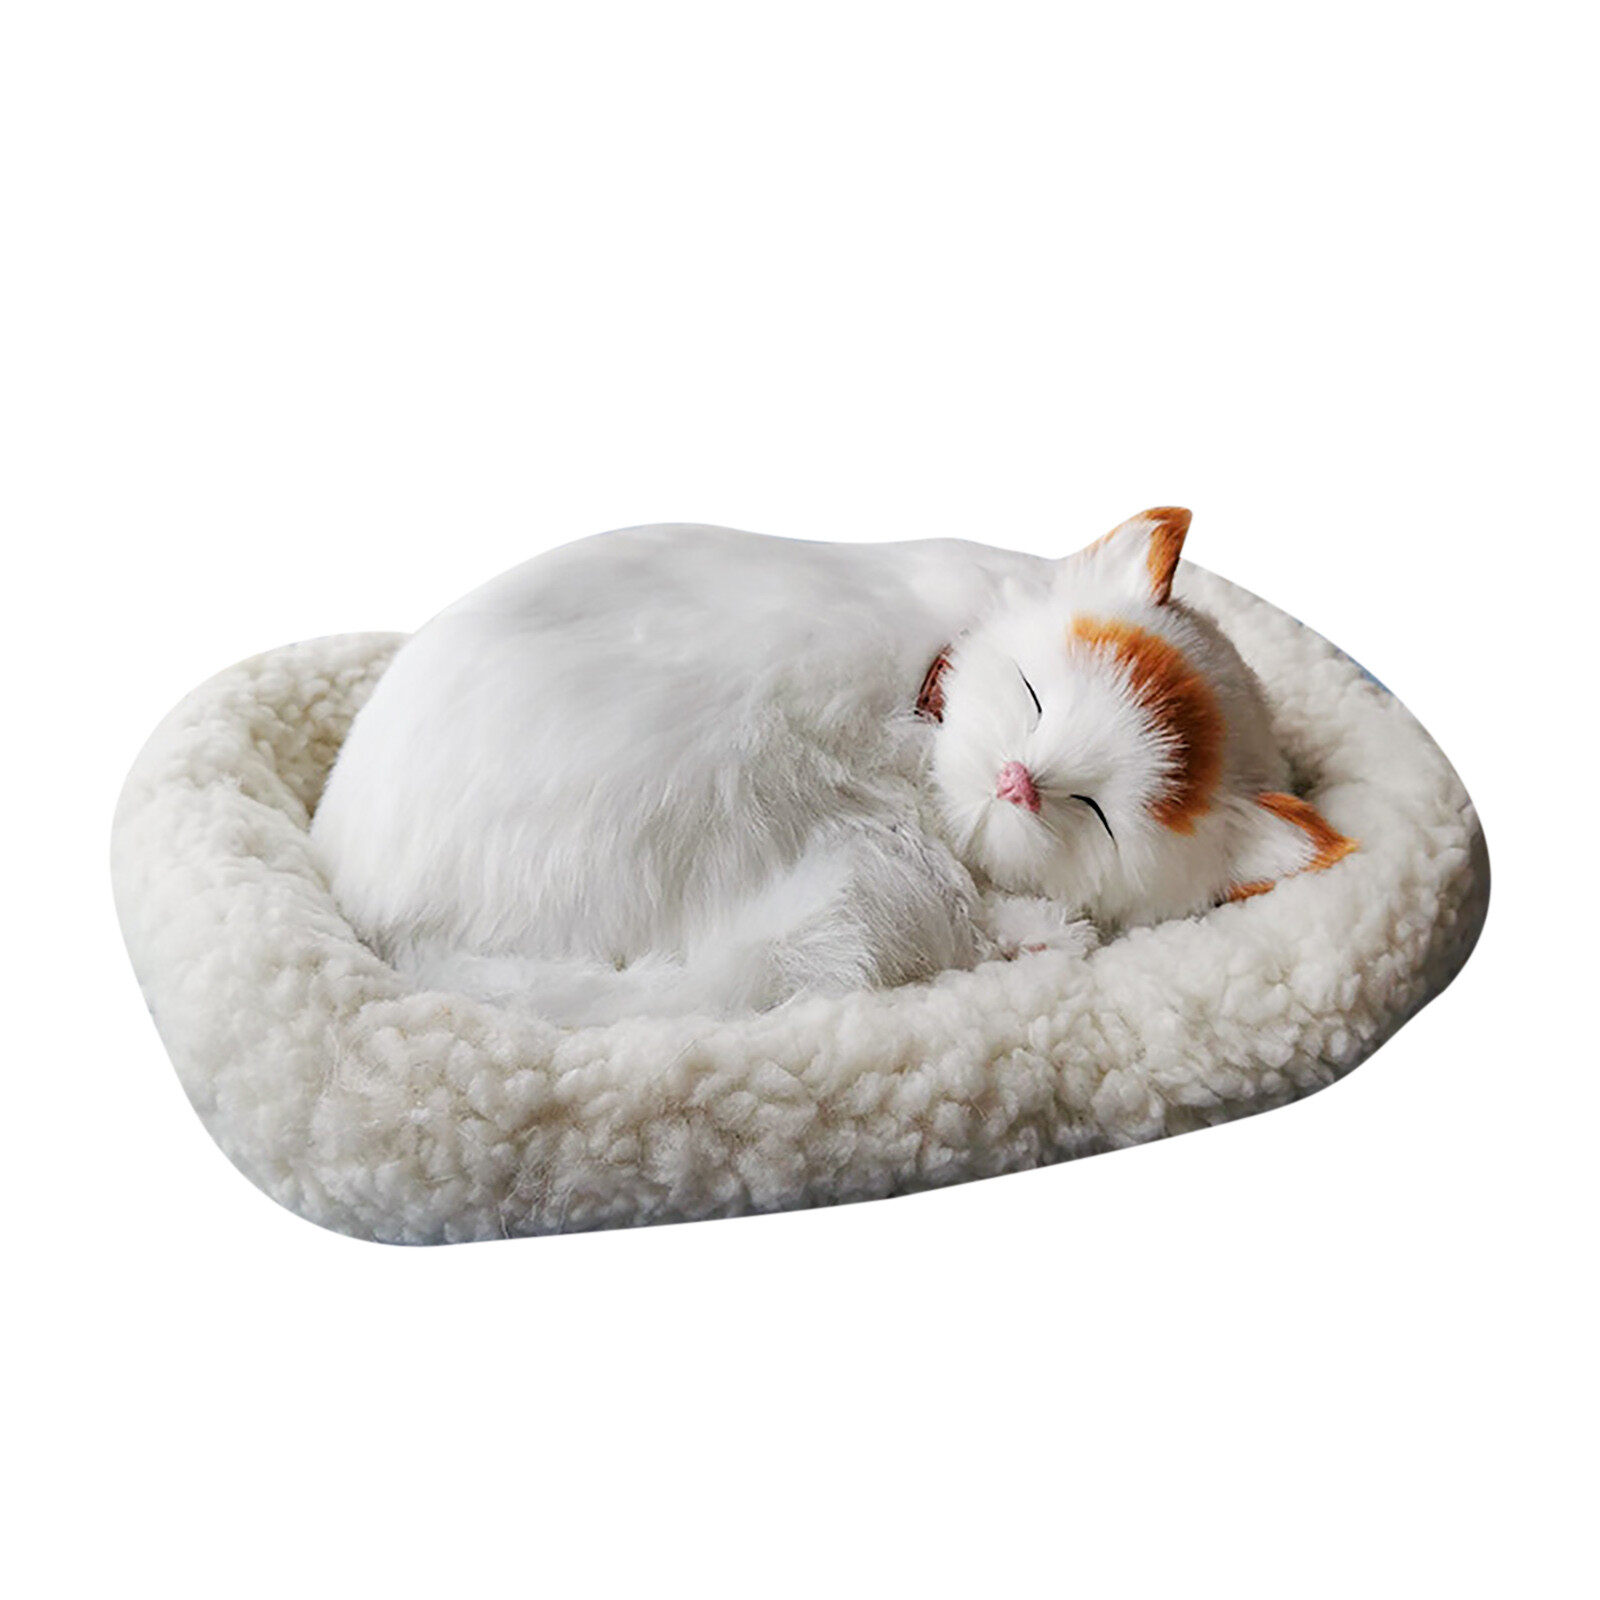 นอนหลับสมจริง Plush แมวหายใจ Furry สุนัข Mat Creative ของตกแต่งรูปสัตว์